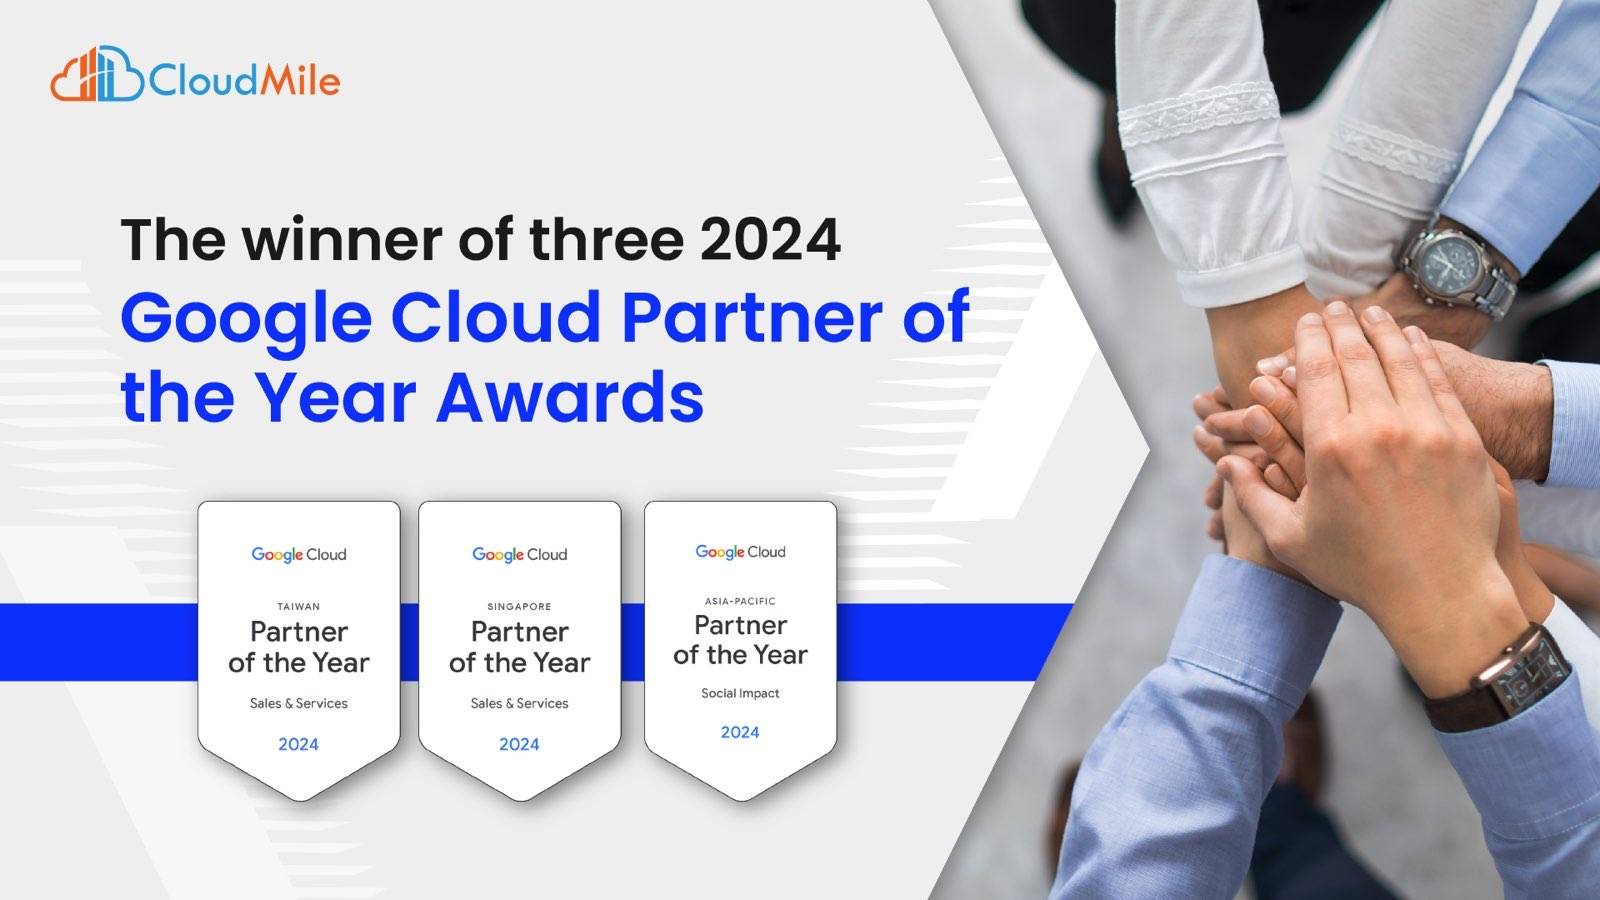 GoogleCloud awards CloudMile